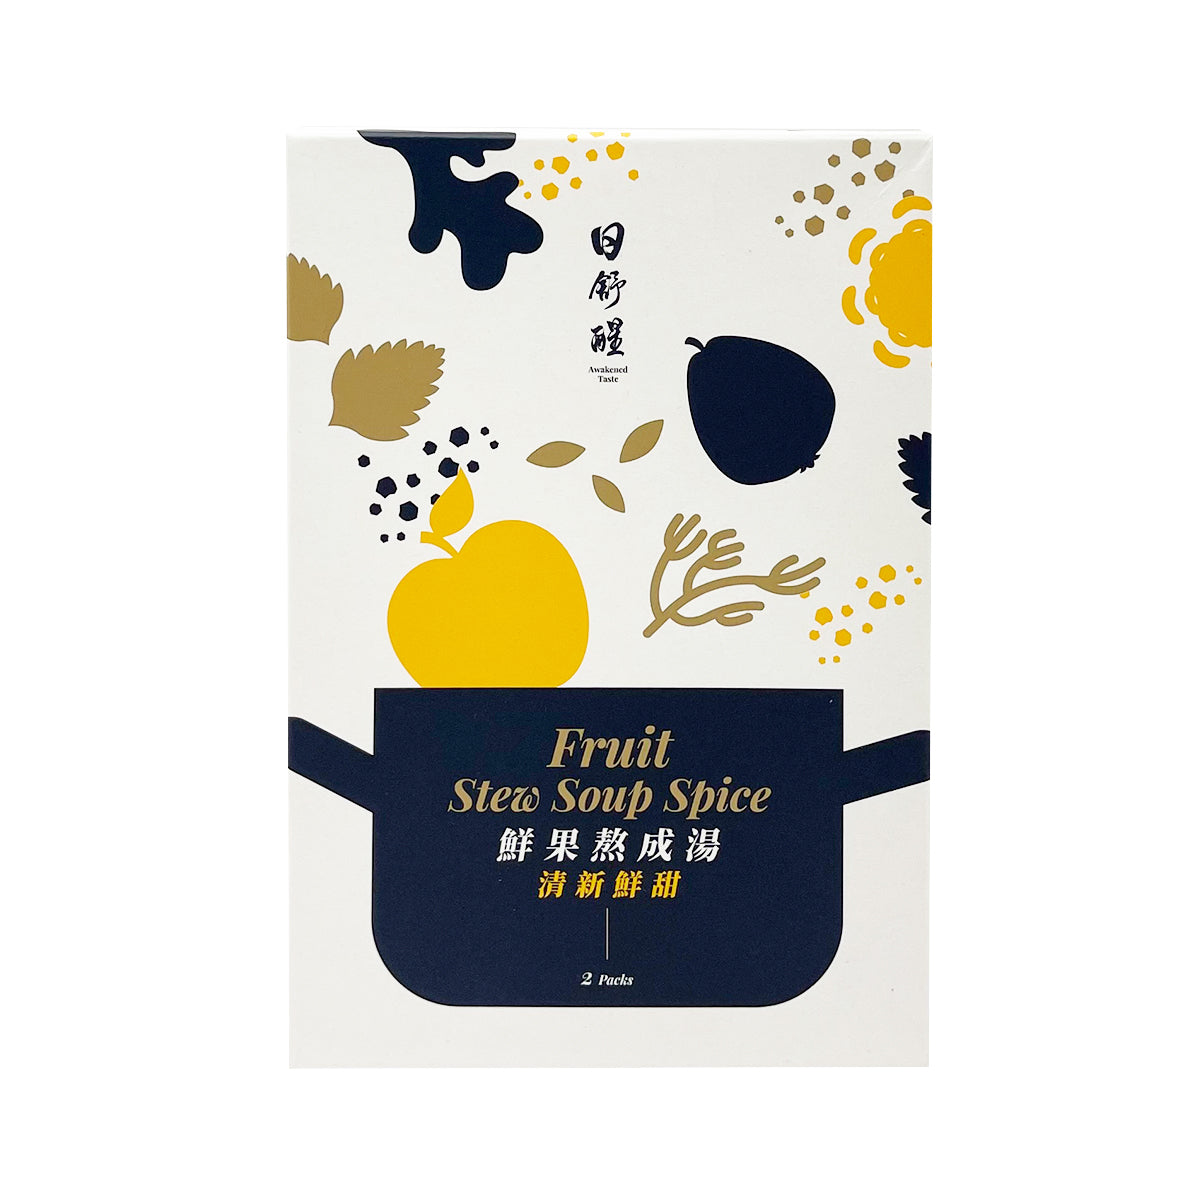 【AWAKENED TASTE】Fruit Stew Soup Spice 52g 2packs